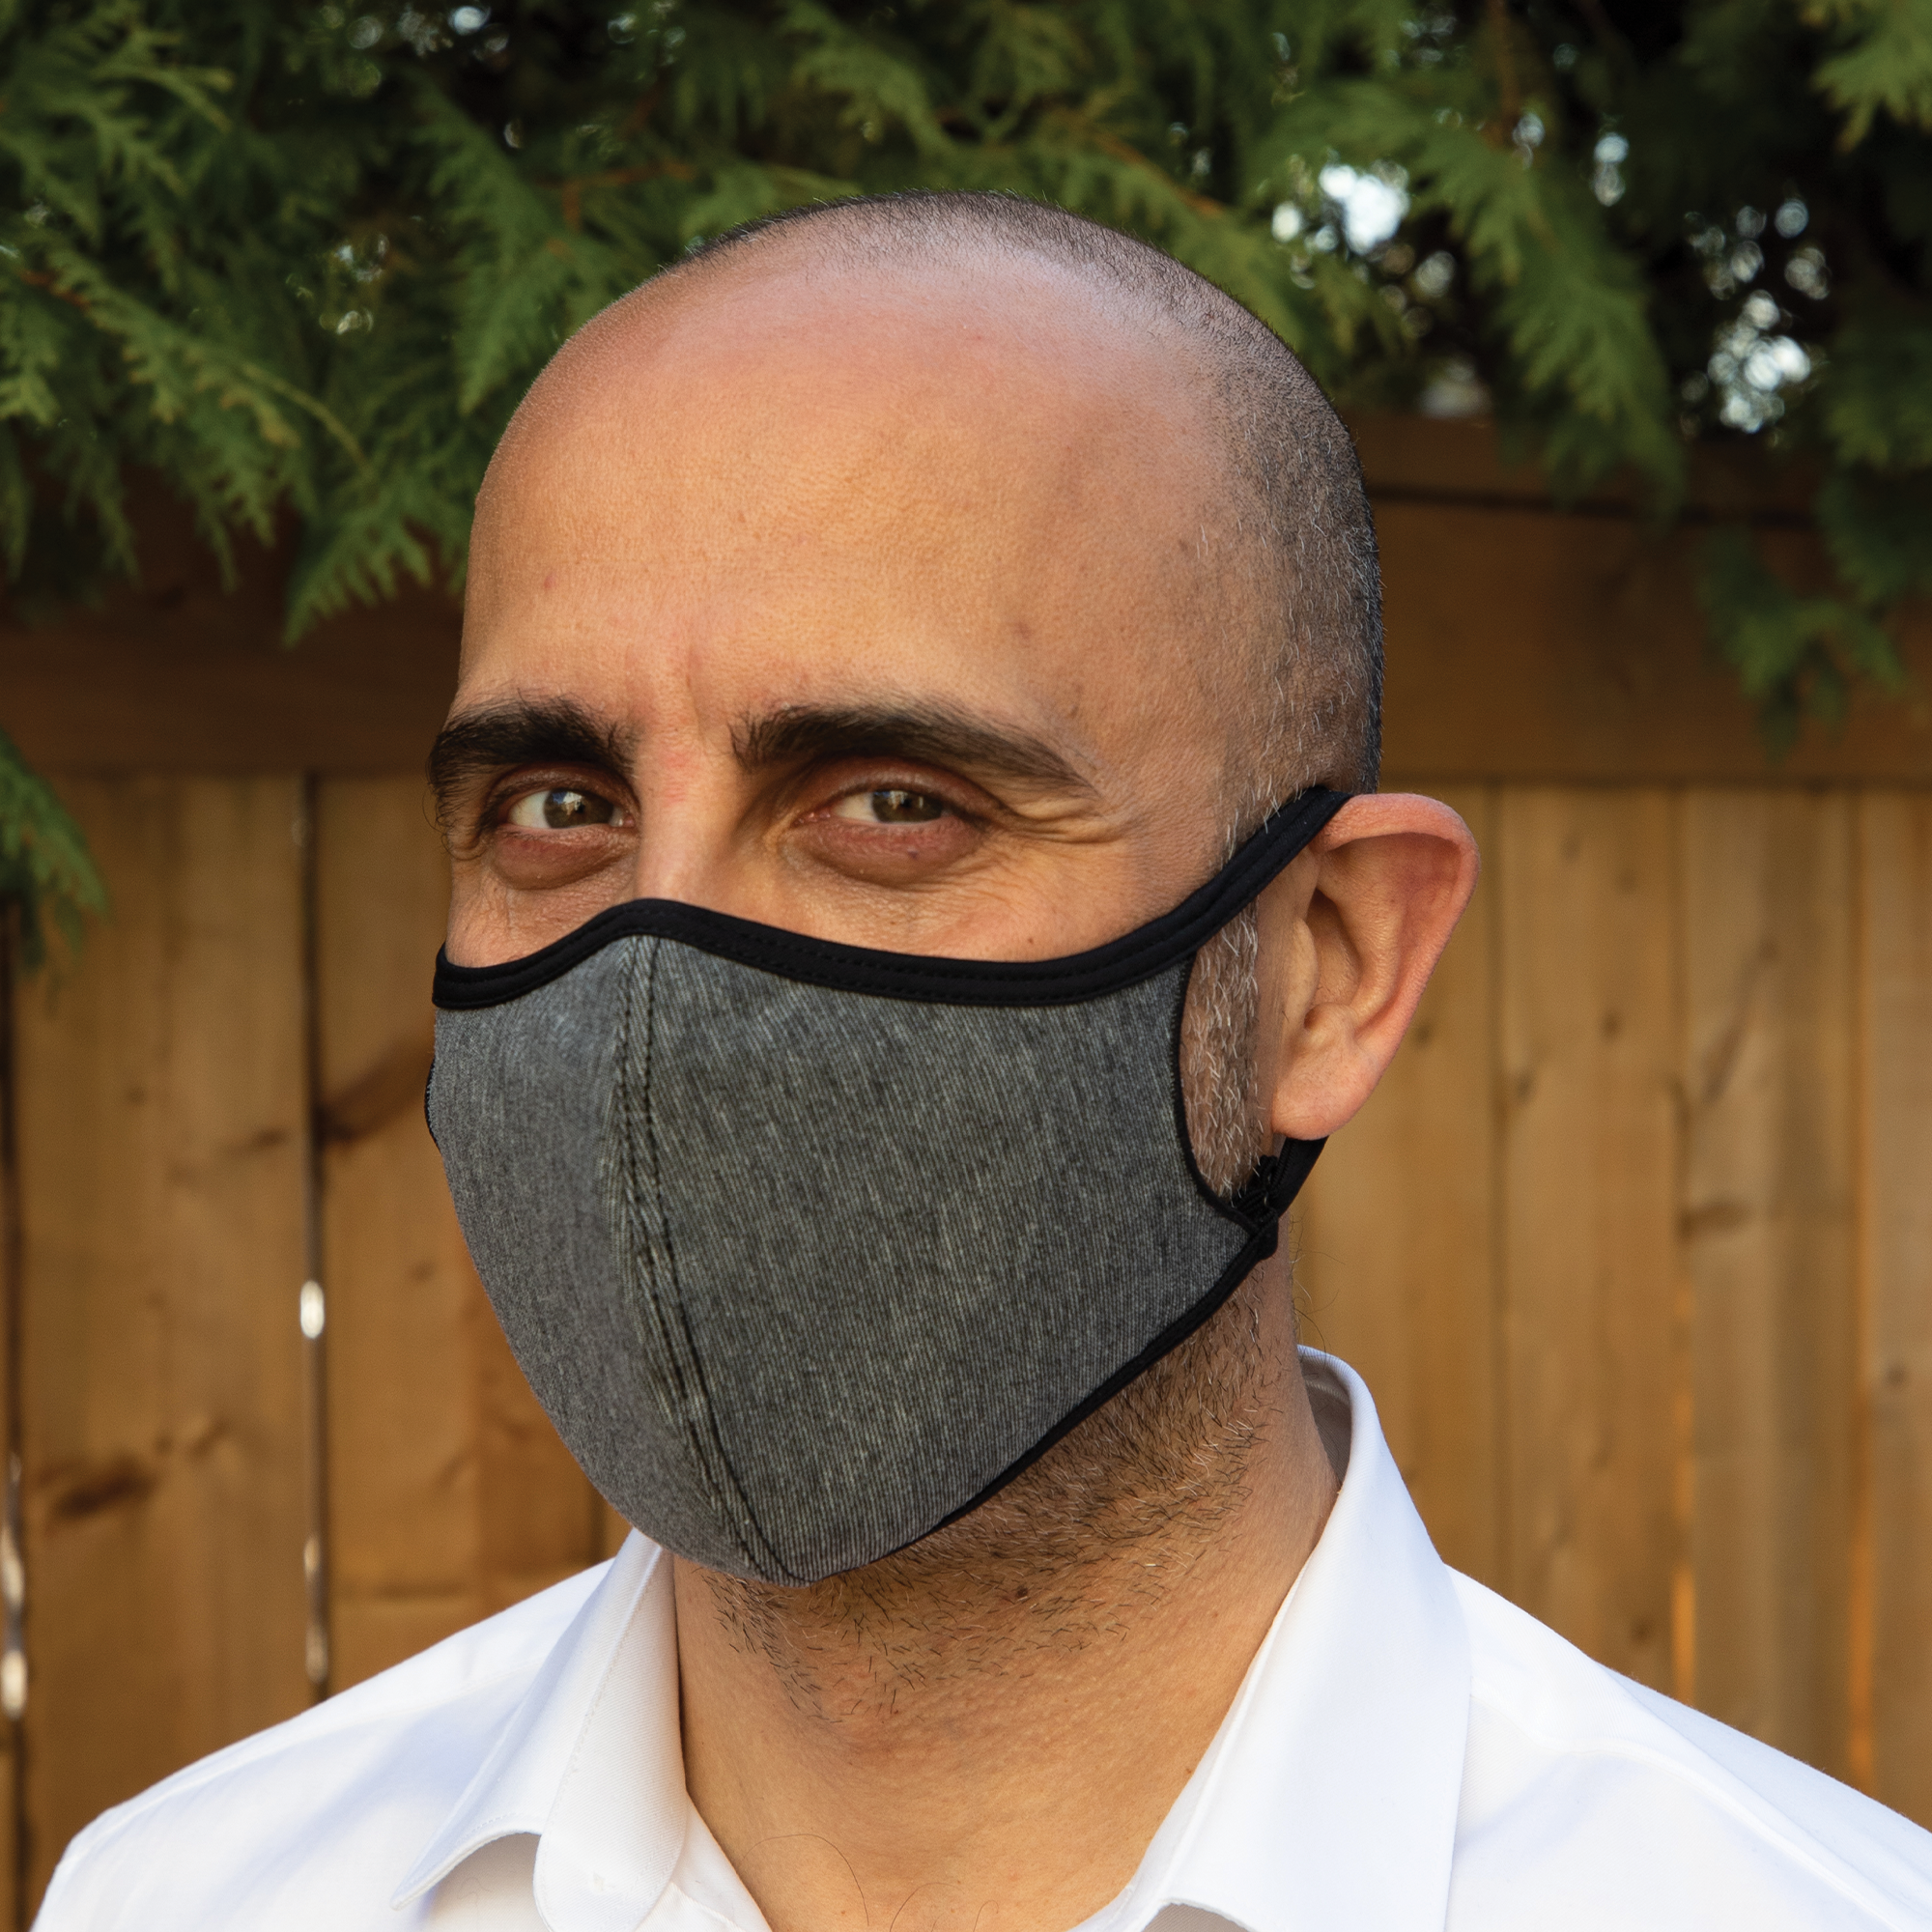 PowerTraveller | Defender Pro Face Mask